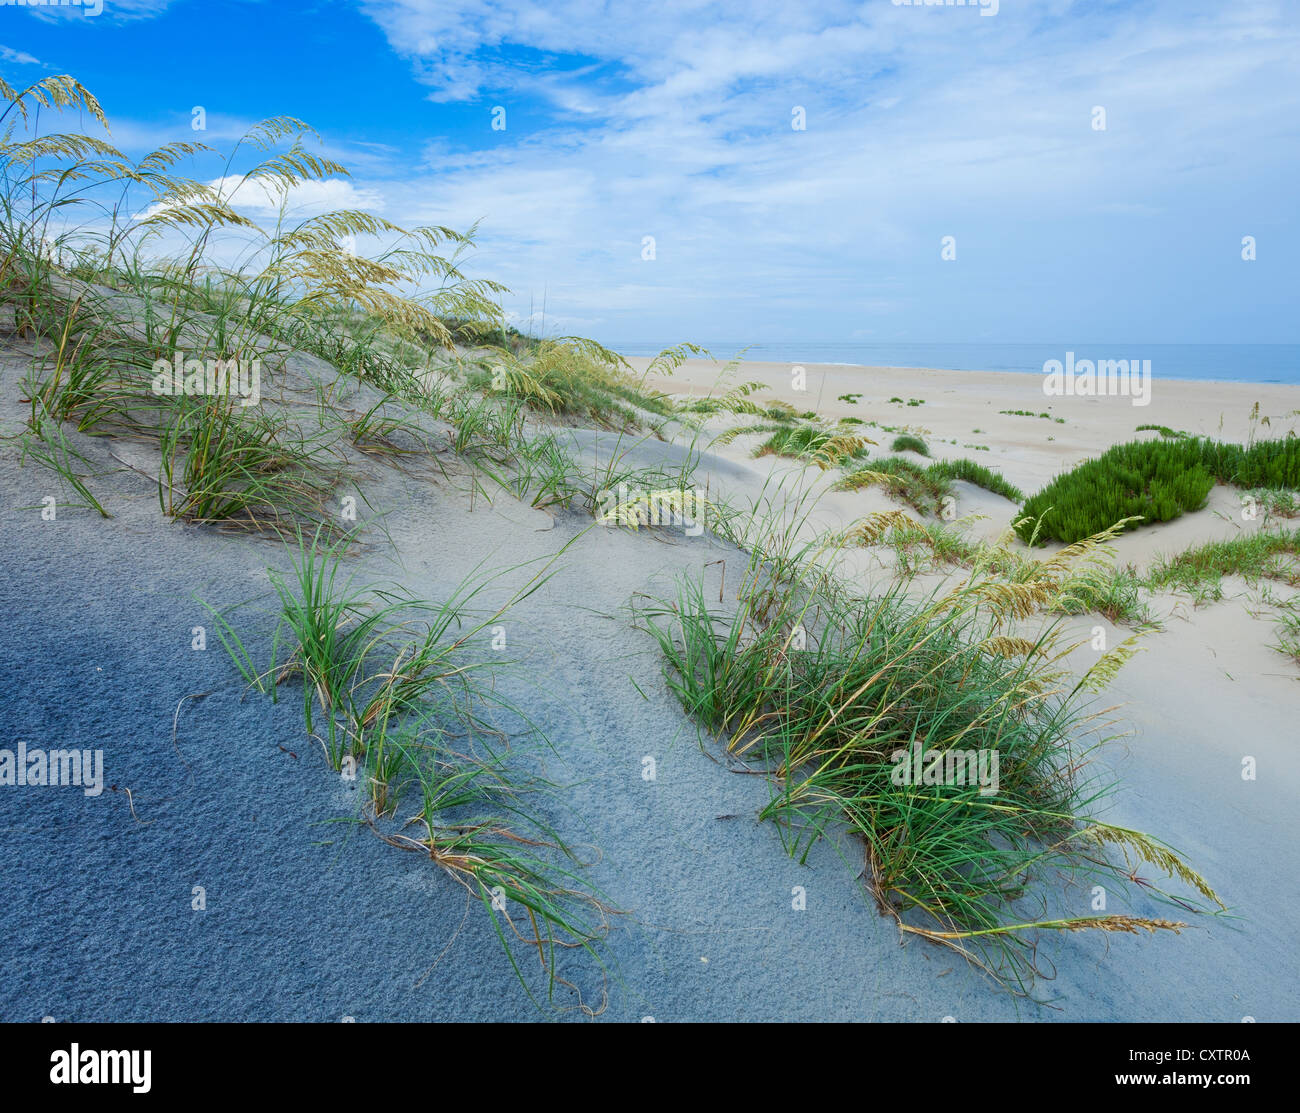 Il segnale di PEA Island National Wildlife Refuge, North Carolina Seaoats (Uniola paniculata) sulle dune del segnale di PEA Island, Cape Hatteras Foto Stock